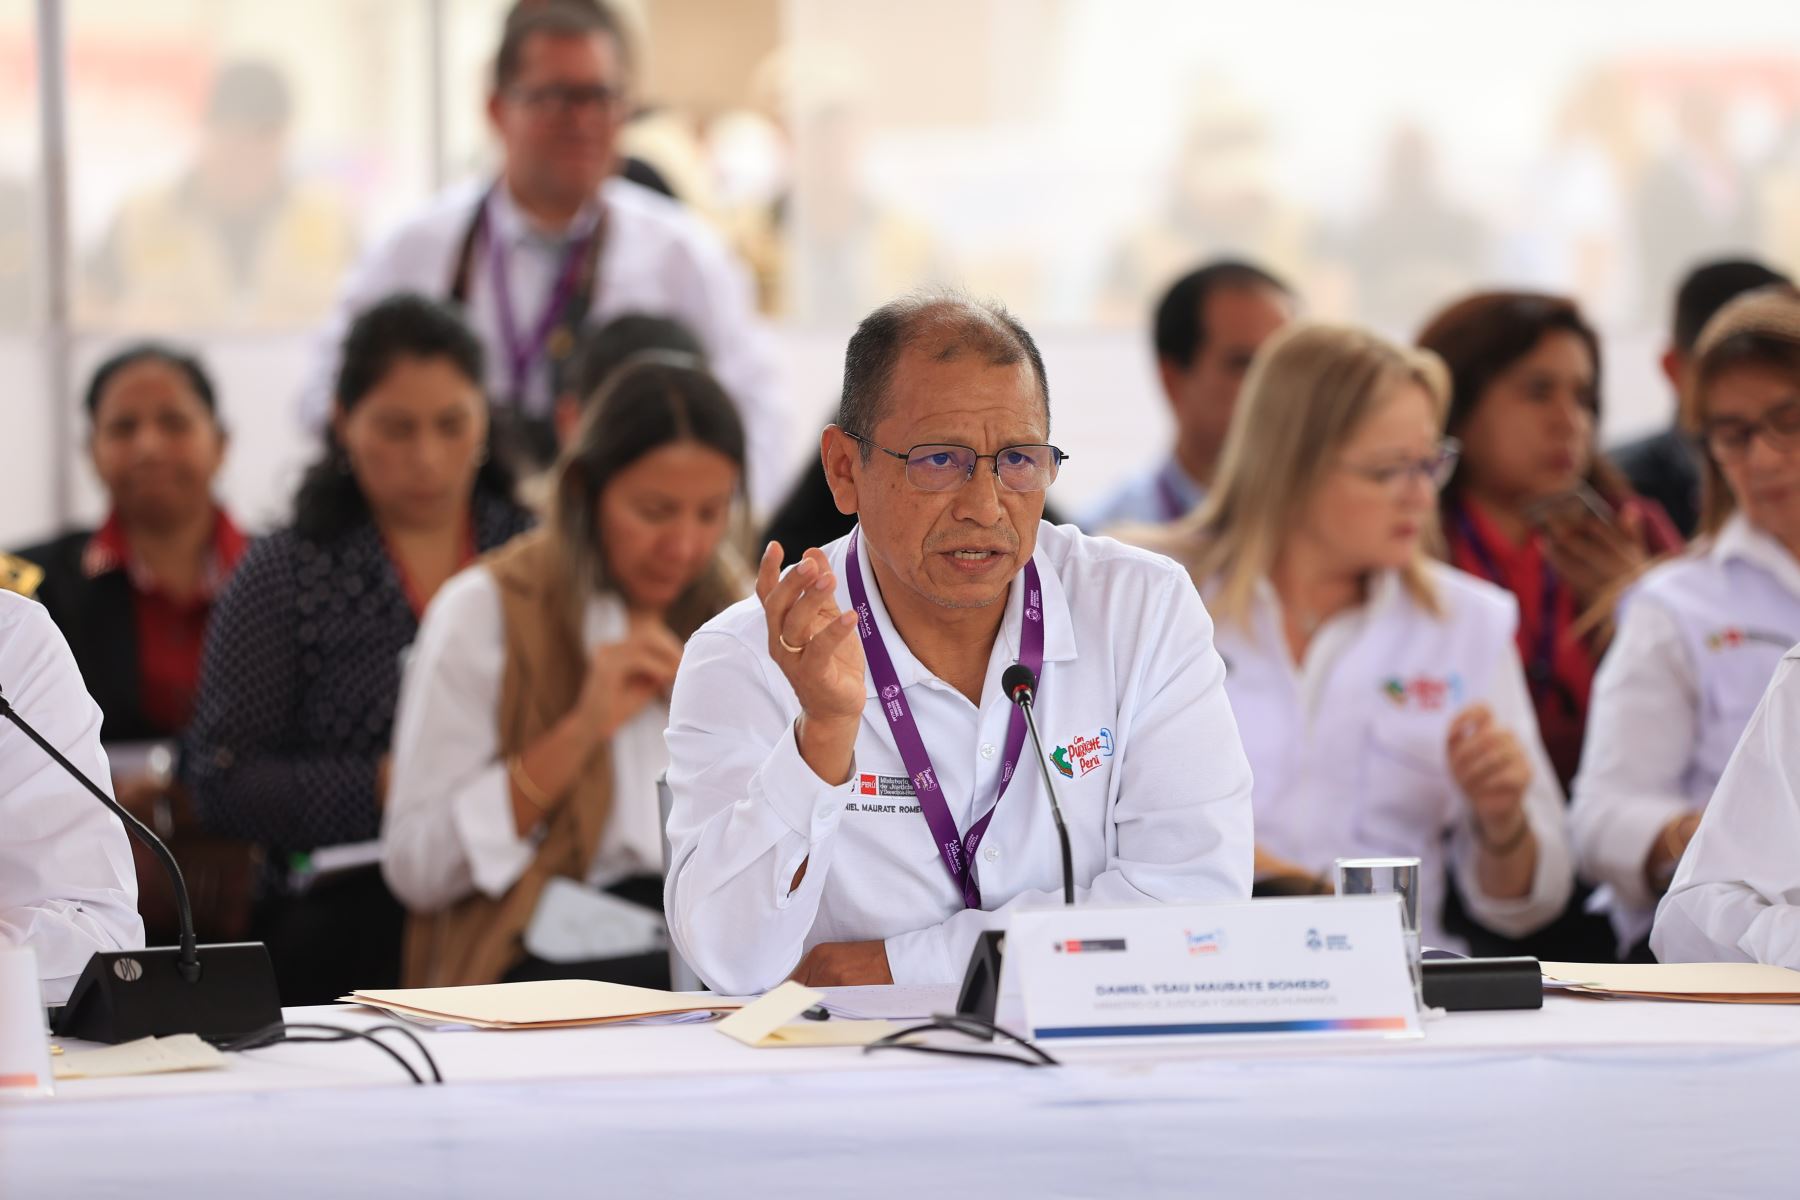 Presidenta Dina Boluarte participa en la Mesa por la Paz y la Gobernabilidad Con Punche Regional en el Callao. Foto: ANDINA/Prensa Presidencia